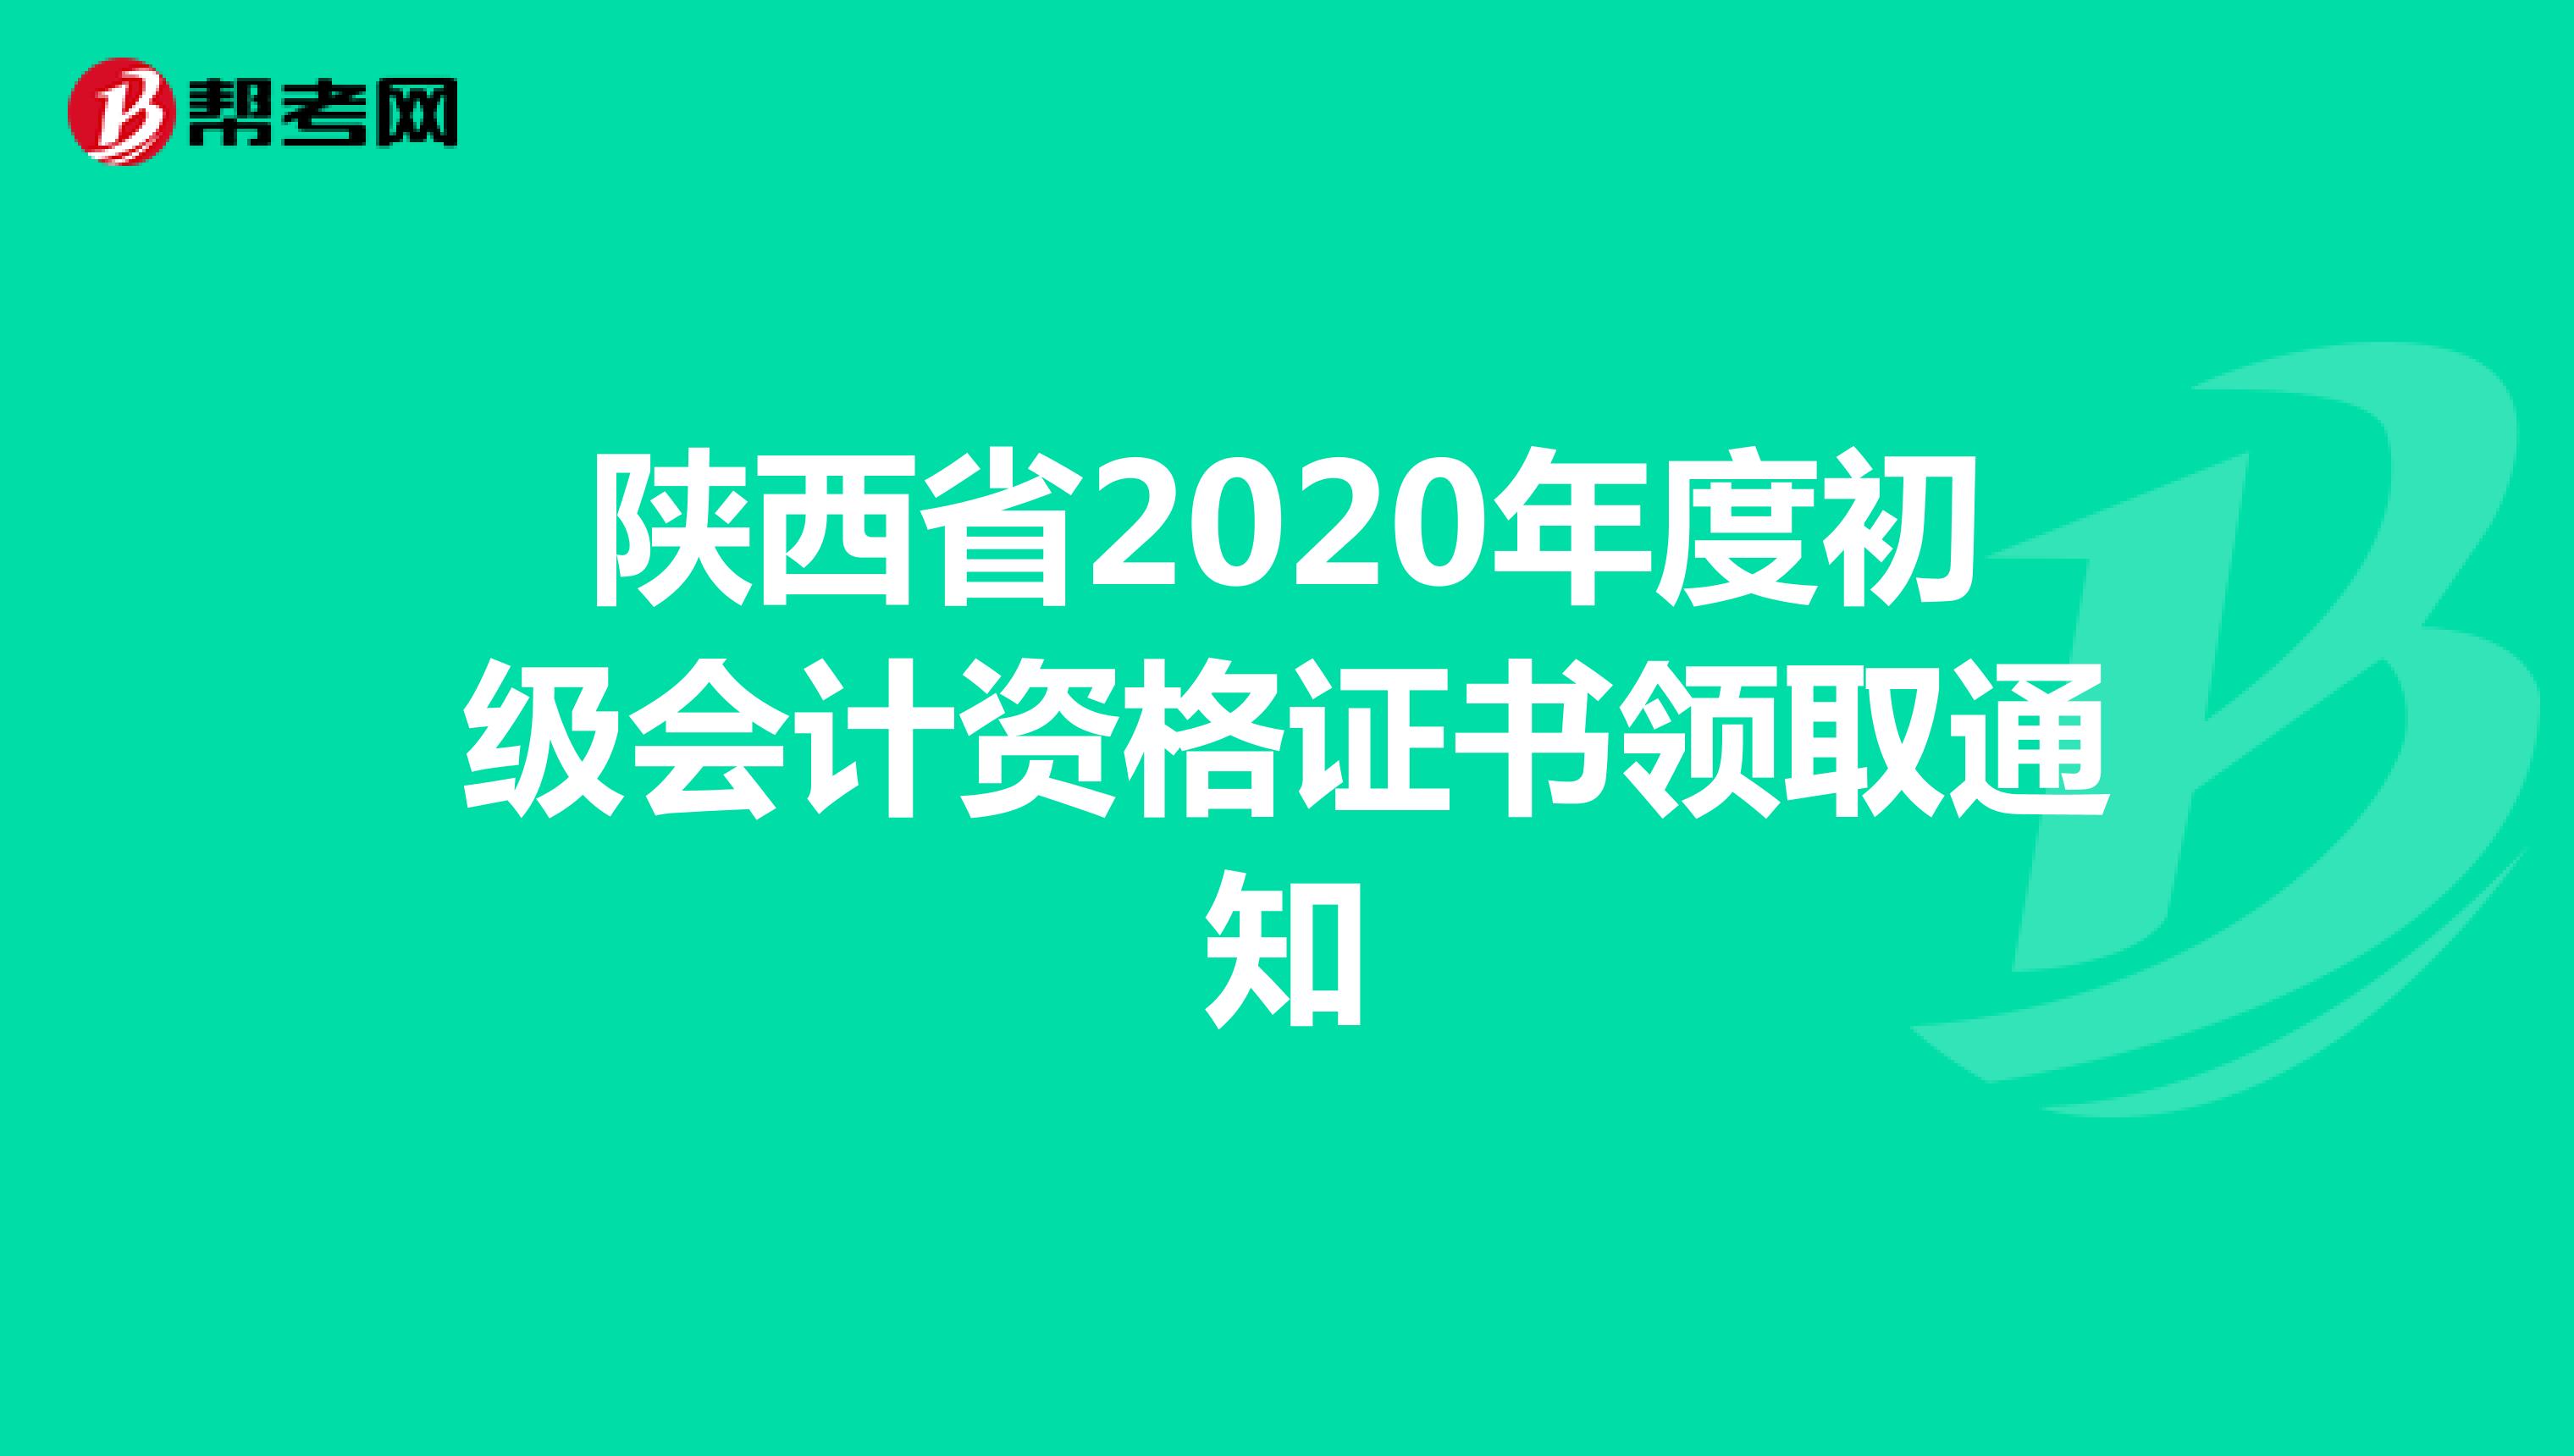  陕西省2020年度初级会计资格证书领取通知